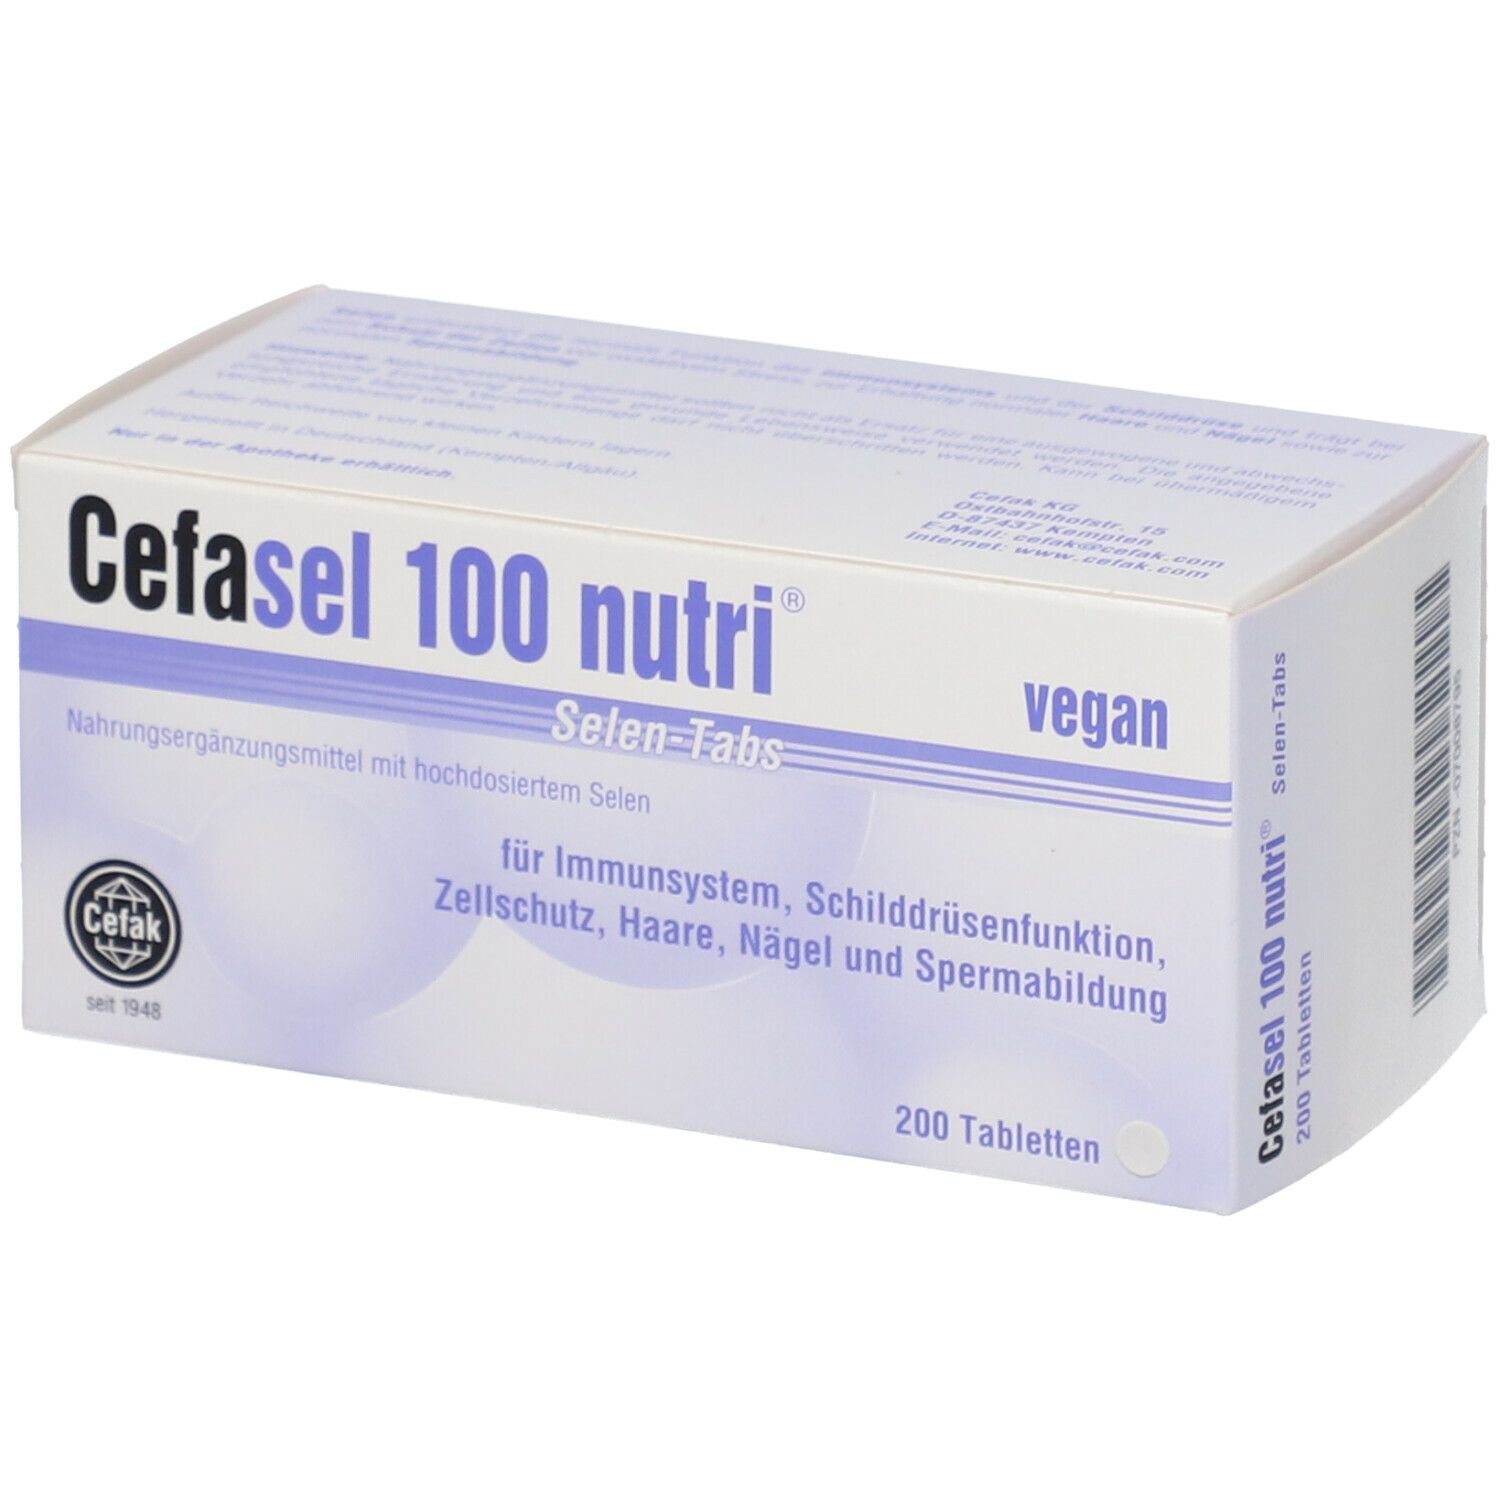 Cefasel 100 nutri® Selen-Tabs